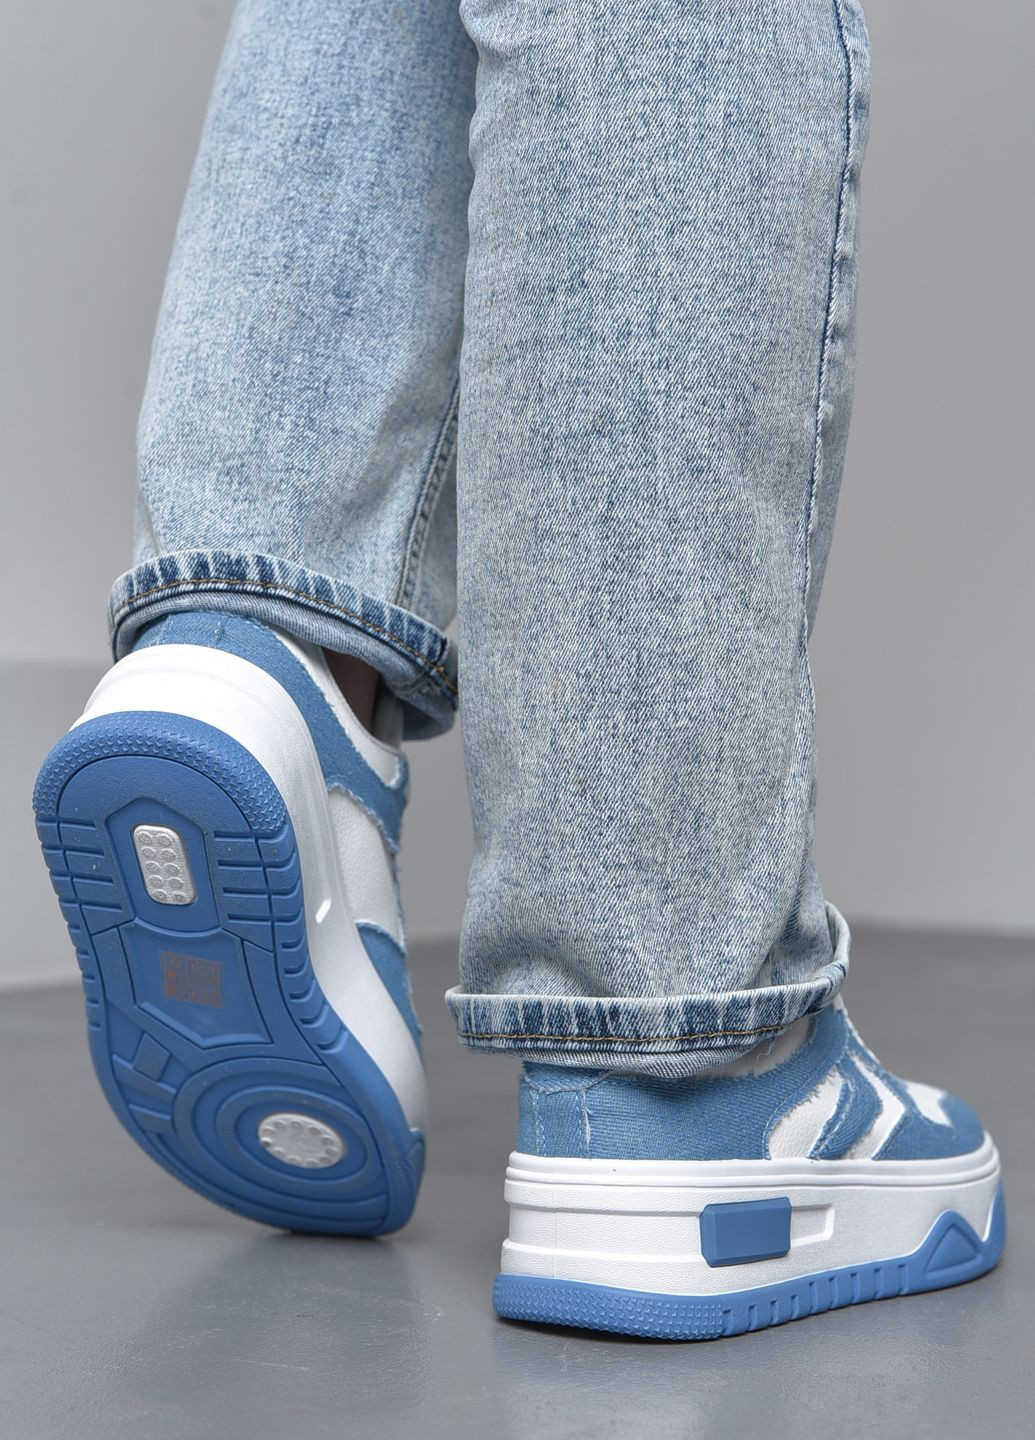 Синие демисезонные кроссовки женские бело-синего цвета на шнуровке Let's Shop